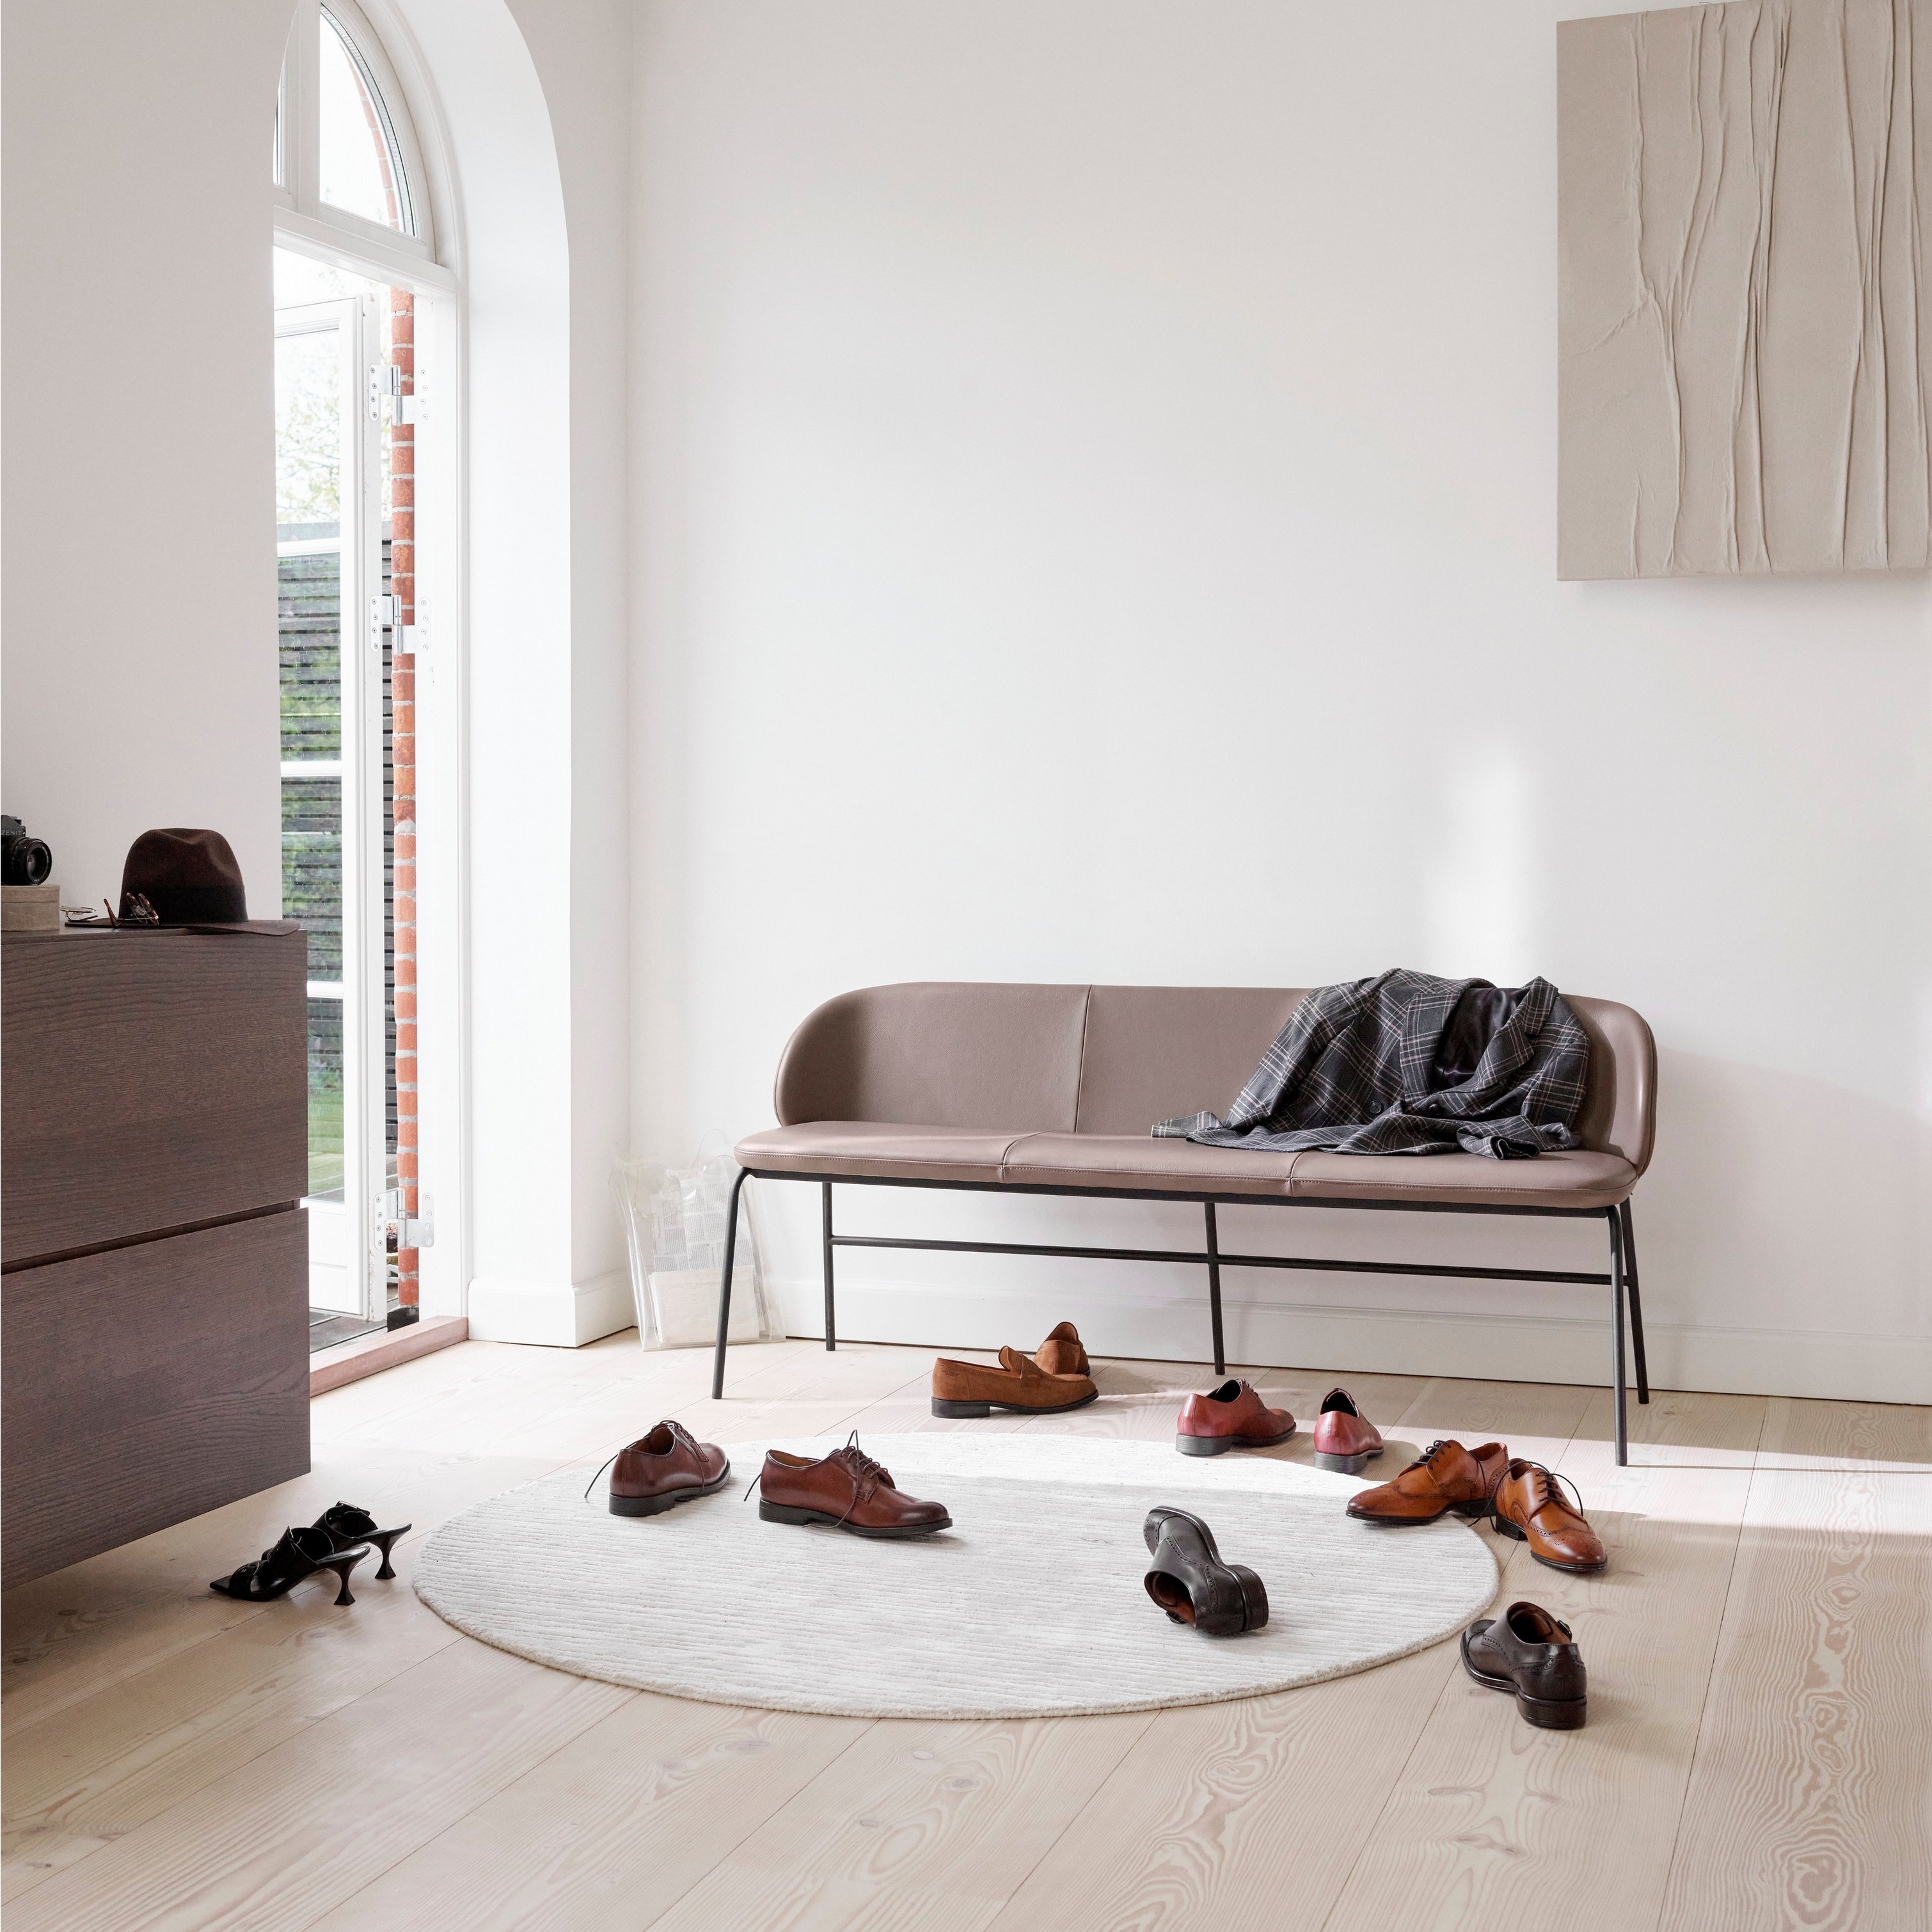 Läderbänk i ett ljust rum med välvt fönster, skor på golvet och träkonst.